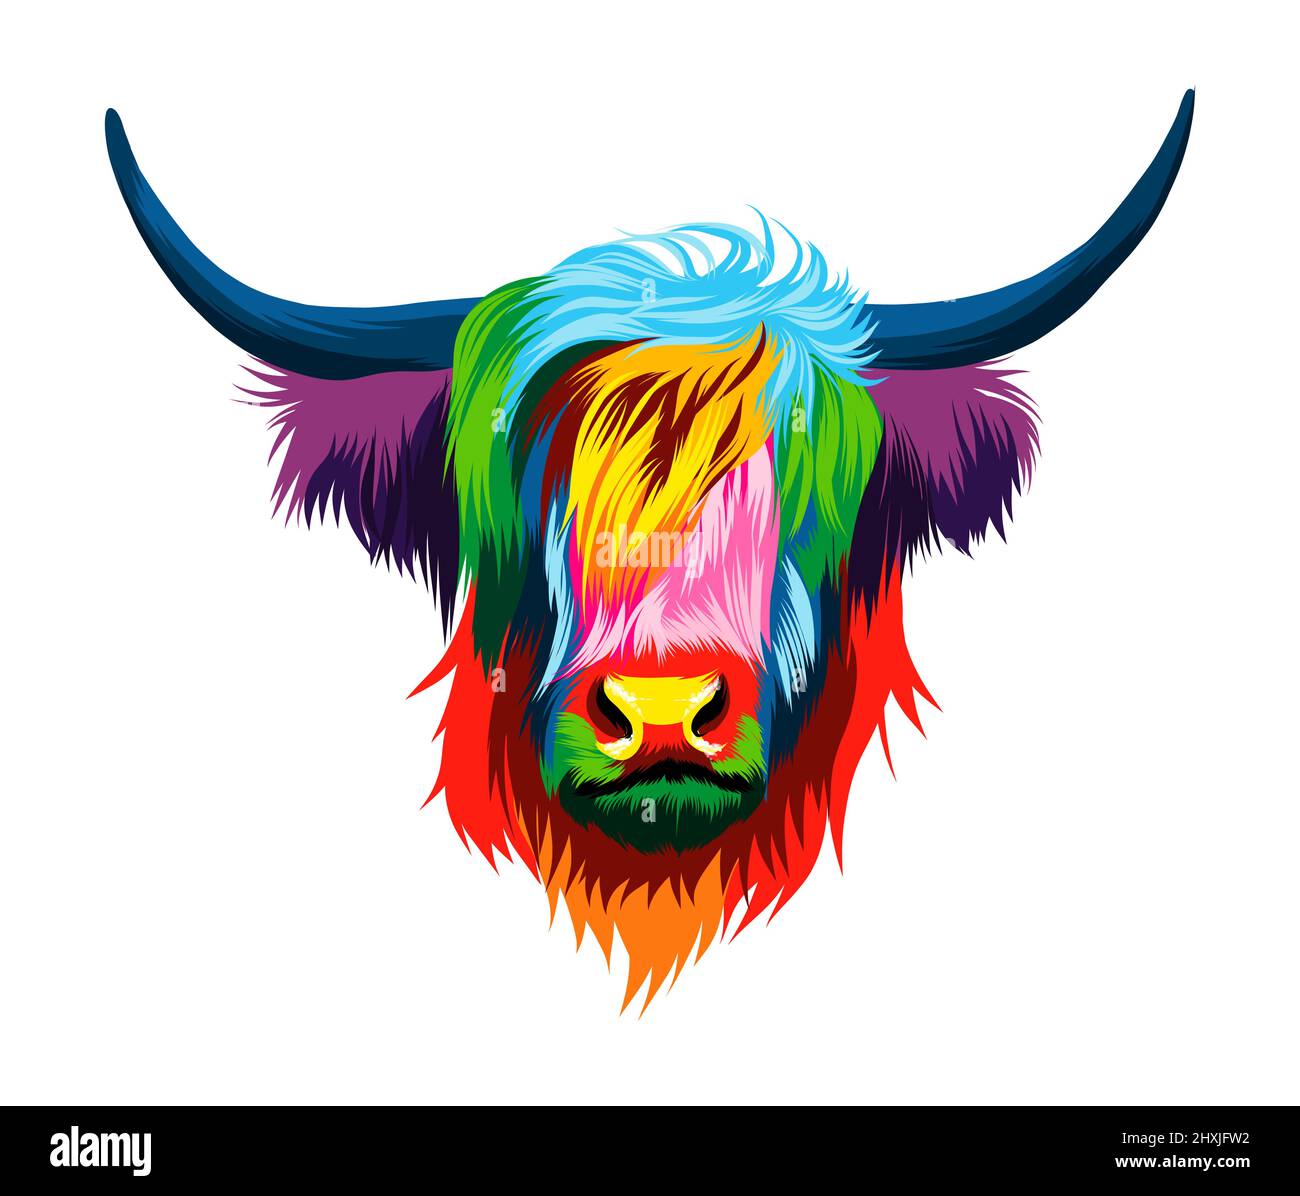 Portrait abstrait de la tête de vache de haut-pays, vache écossaise de haut-pays à partir de peintures multicolores. Mise en plan colorée. Illustration vectorielle des peintures Illustration de Vecteur